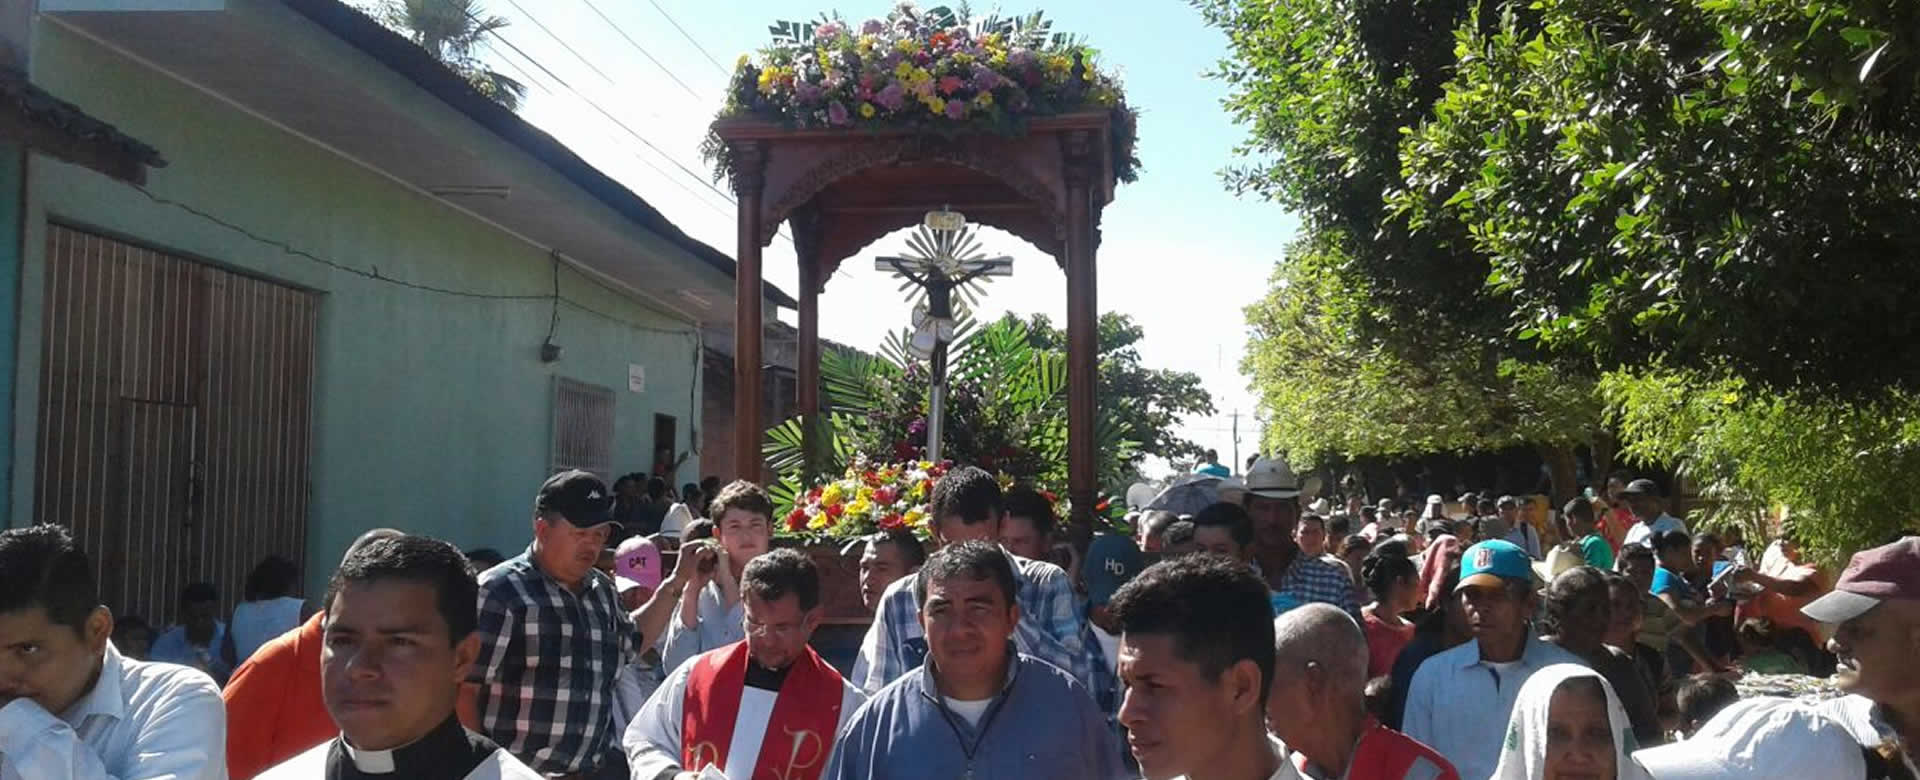 Feligresía católica participa en procesión del Señor de Esquipulas en El Sauce